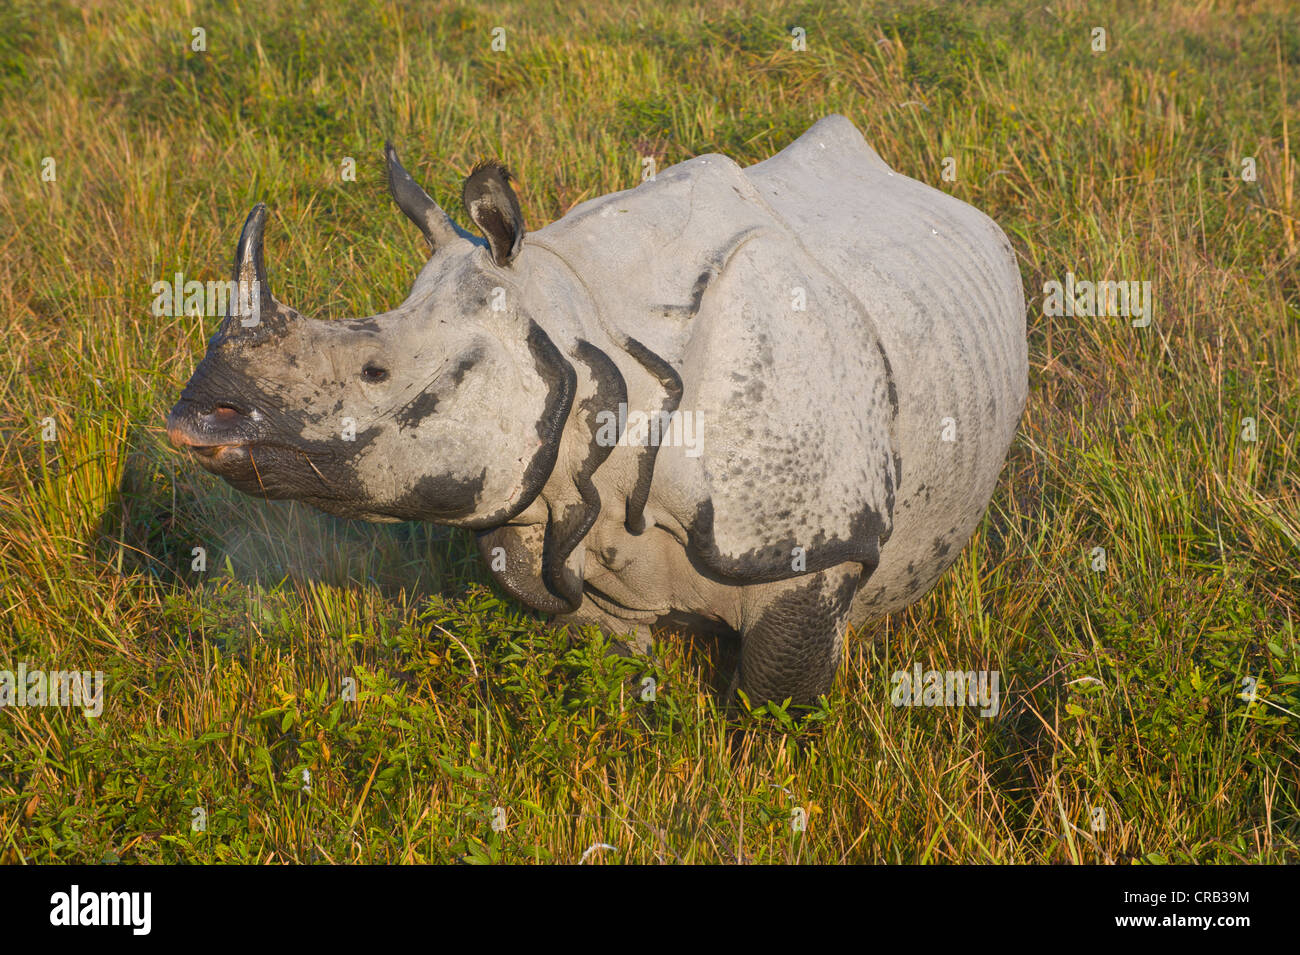 Le Rhinocéros indien (Rhinoceros unicornis) dans le site du patrimoine naturel mondial de l'UNESCO du parc national de Kaziranga, Assam Banque D'Images